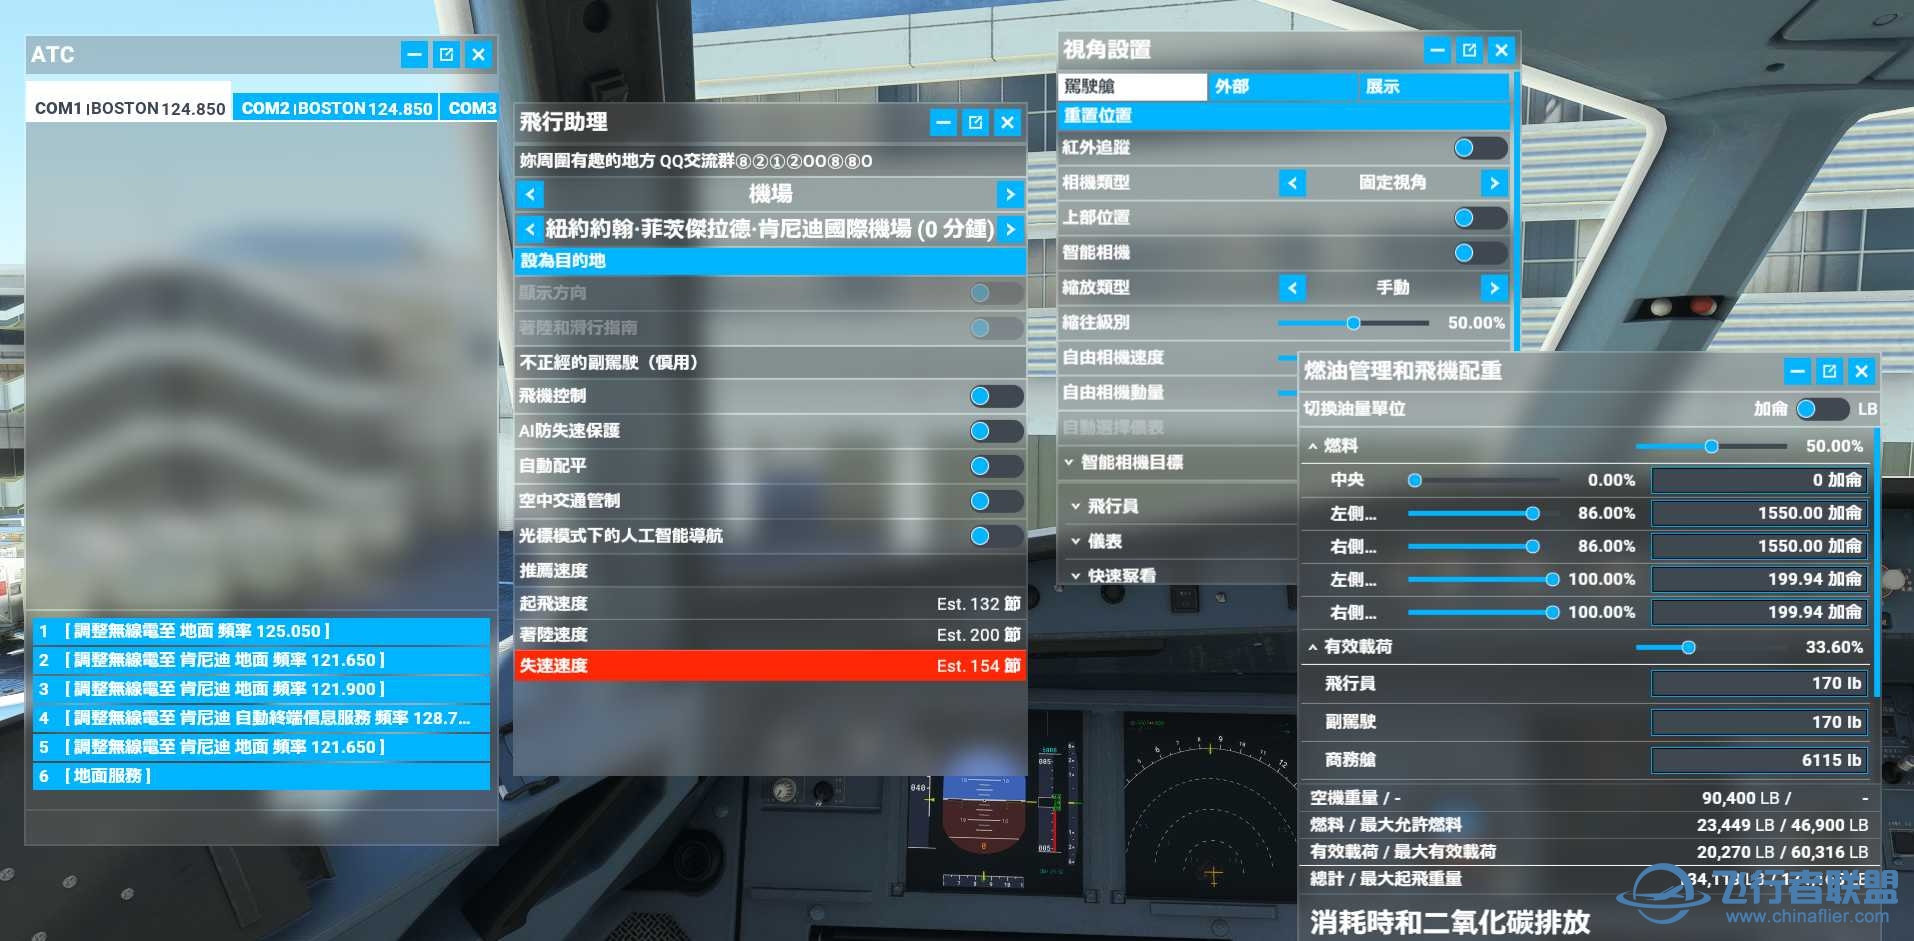 微软模拟飞行2020 1.18.14 繁体中文4.0发布版-3019 